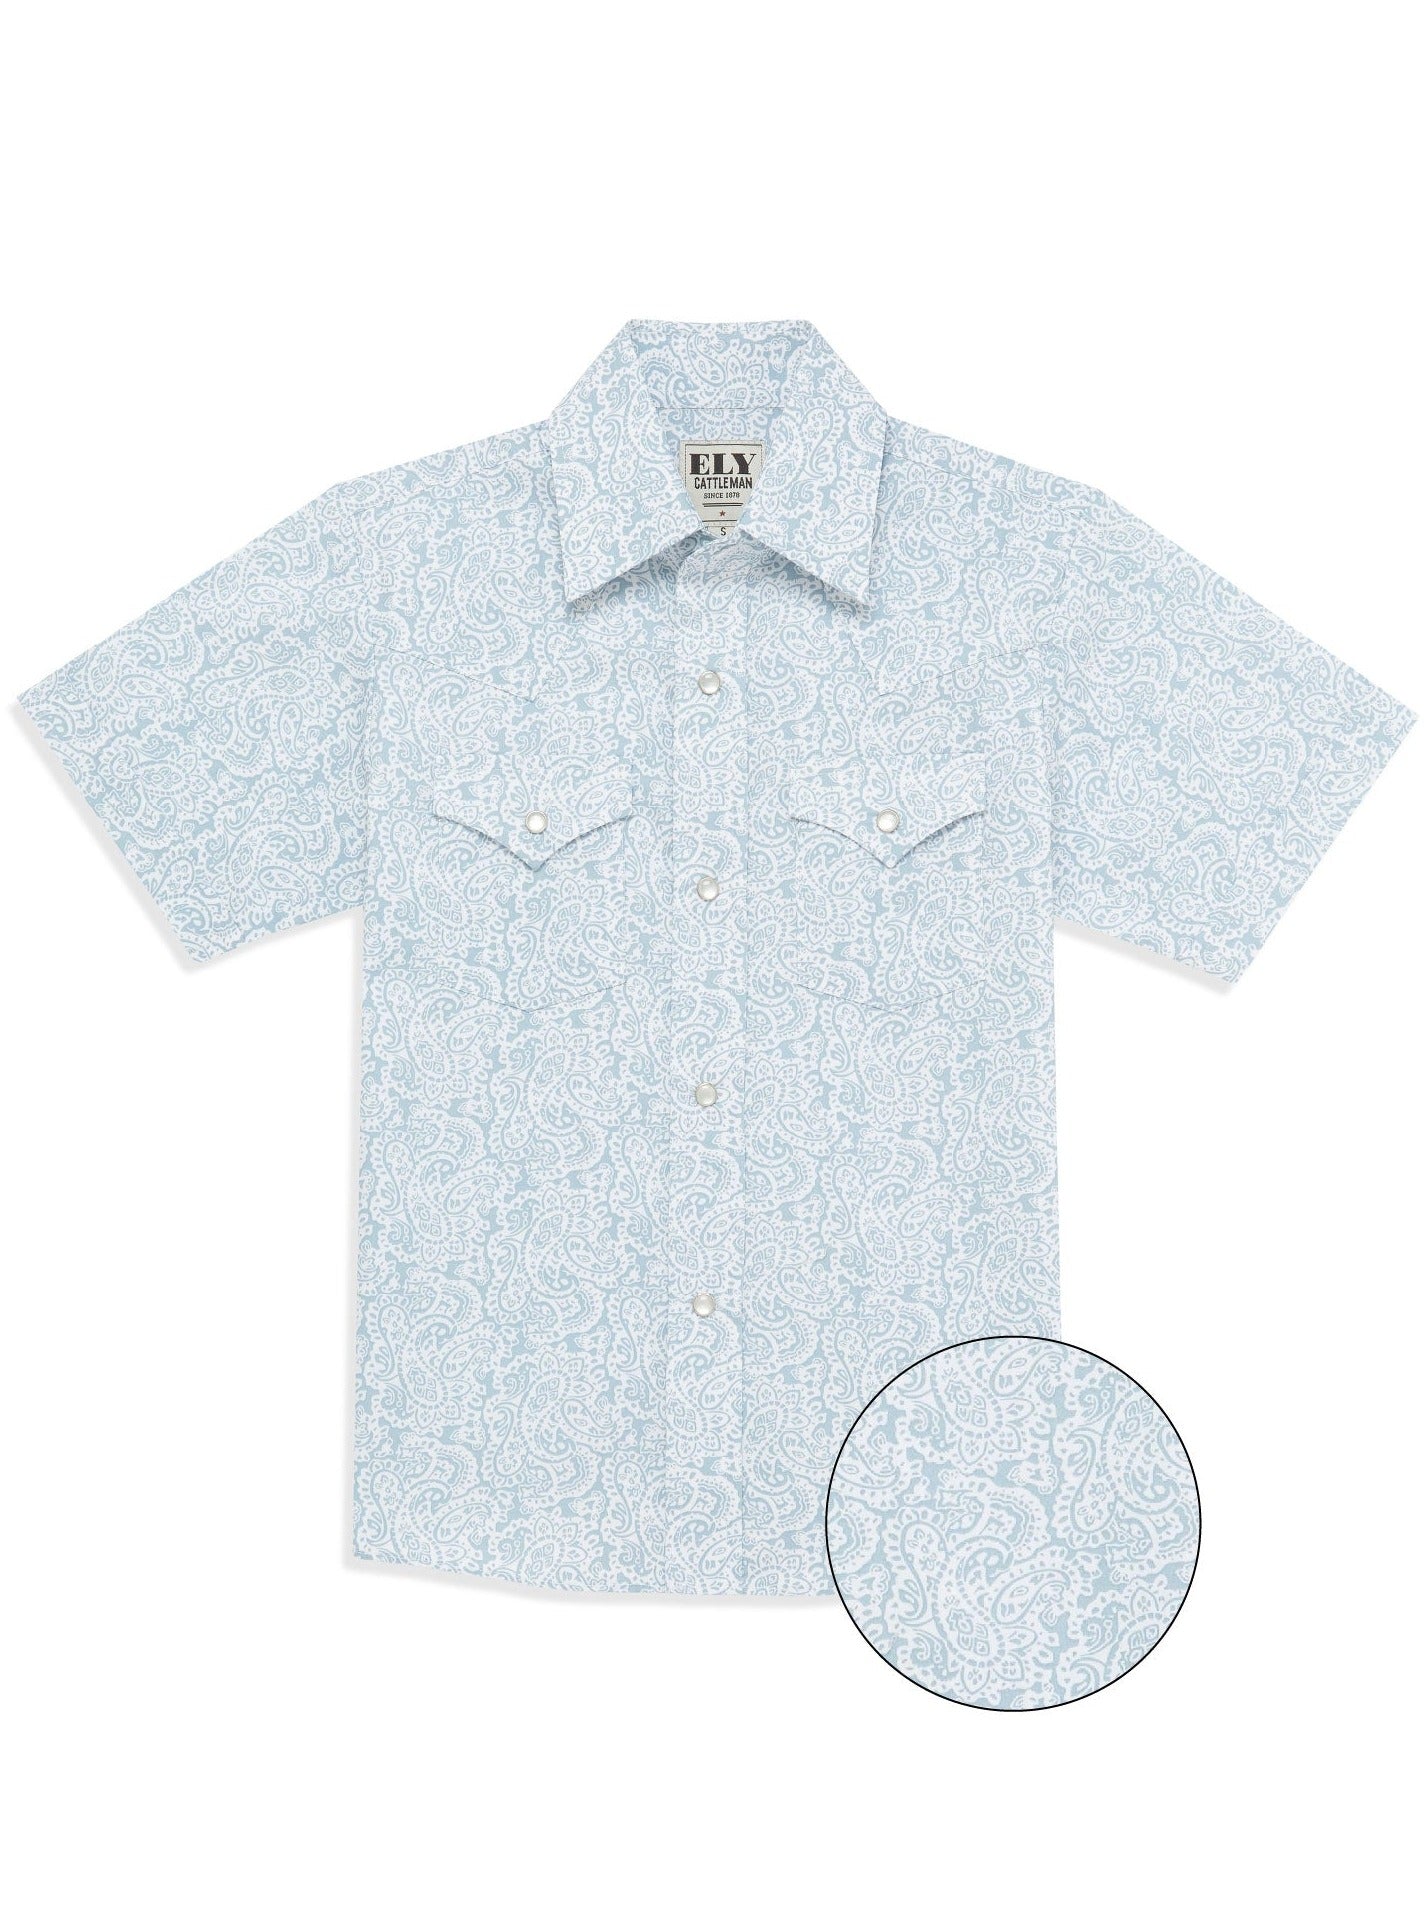 Boy's Ely Cattleman Short Sleeve Paisley Print Snap Shirt- Blue & Khaki